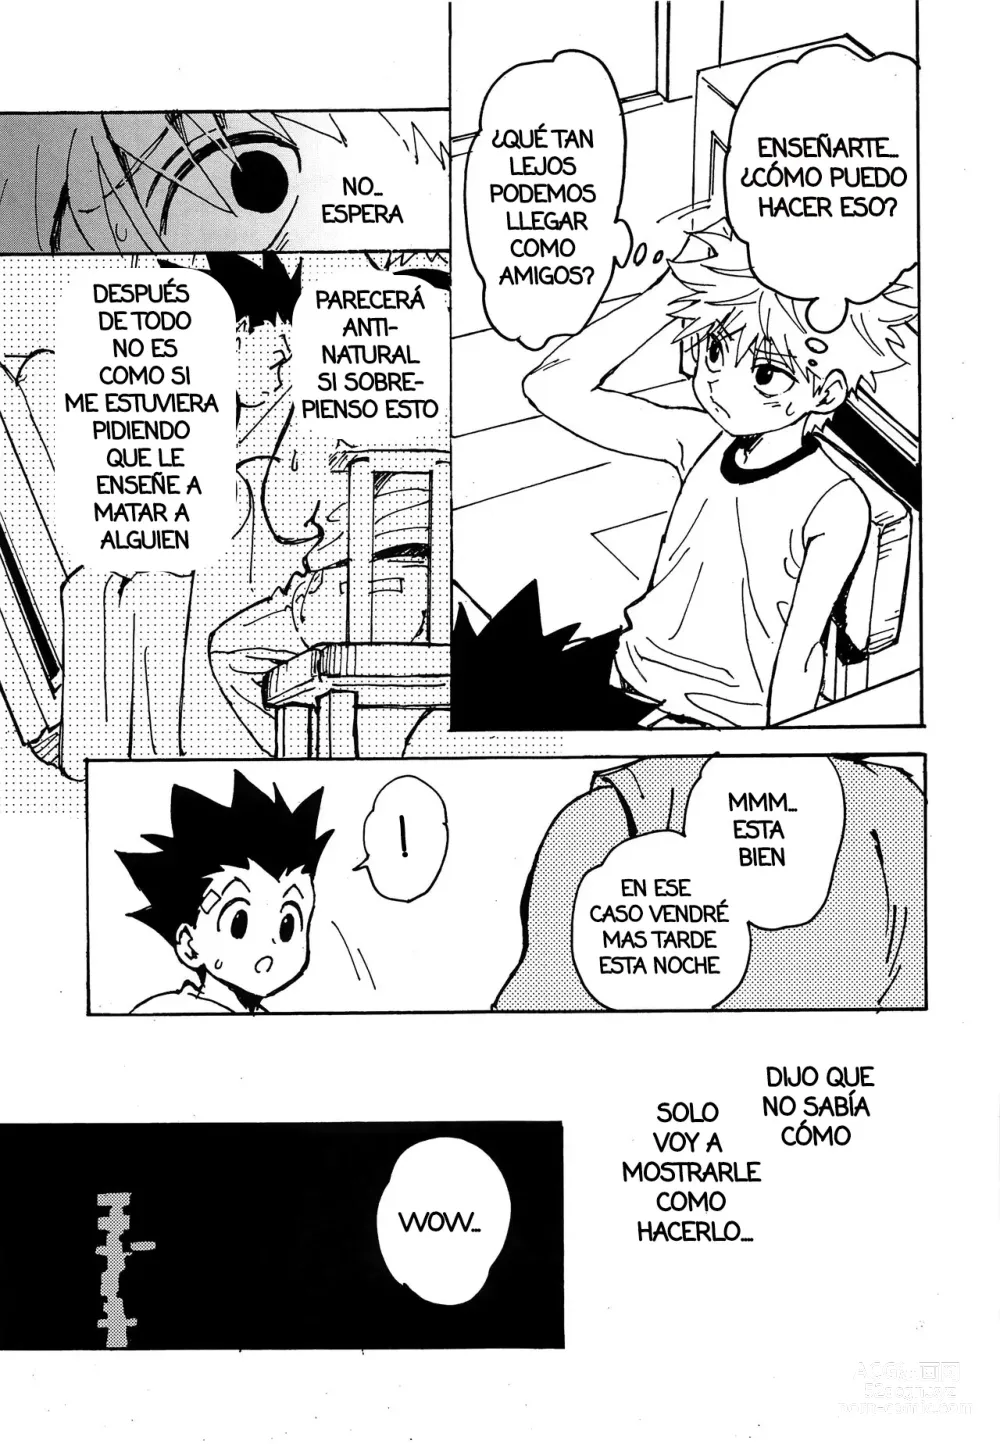 Page 12 of doujinshi Imprudencia Juvenil